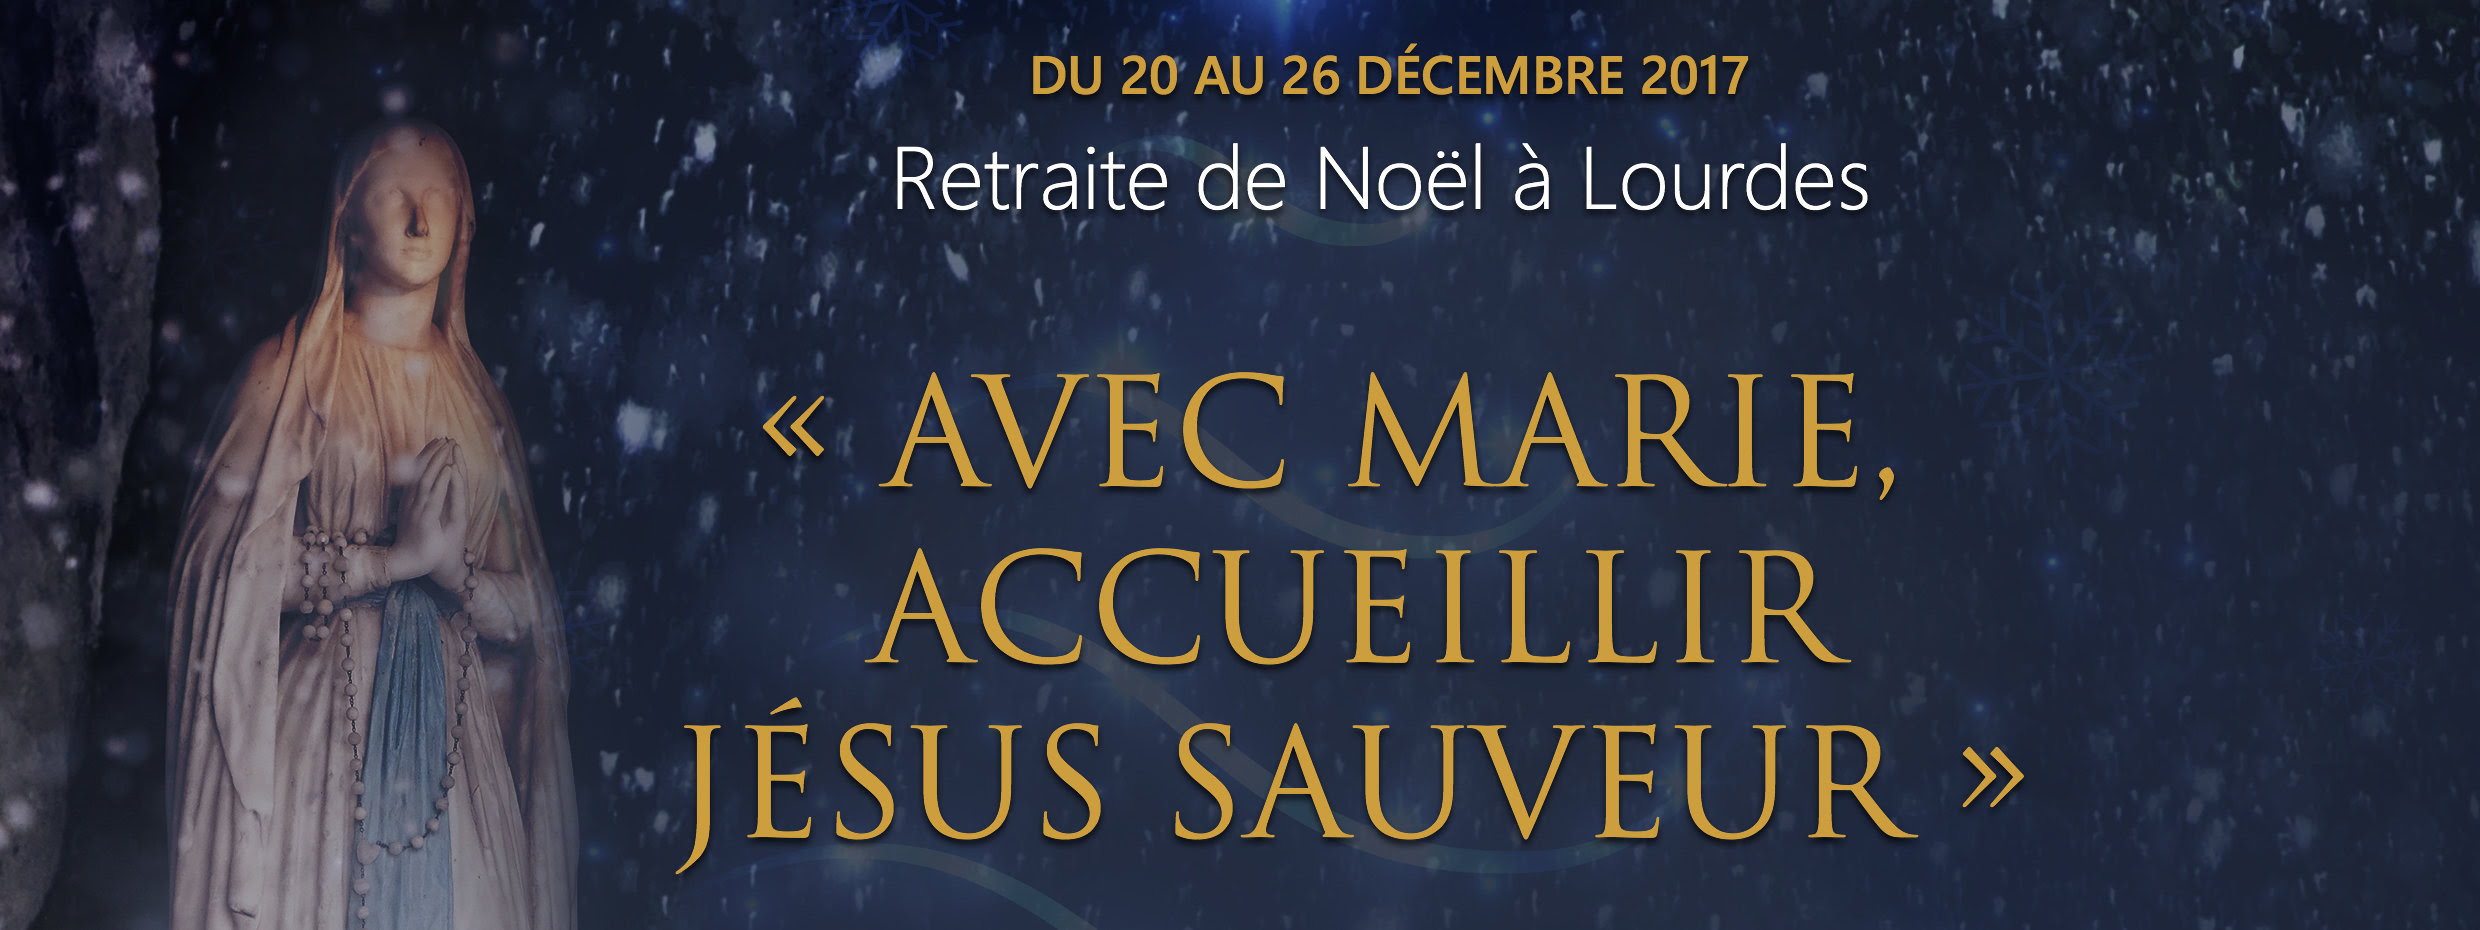 20 – 26 décembre 2017 Retraite de Noël à Lourdes (65)